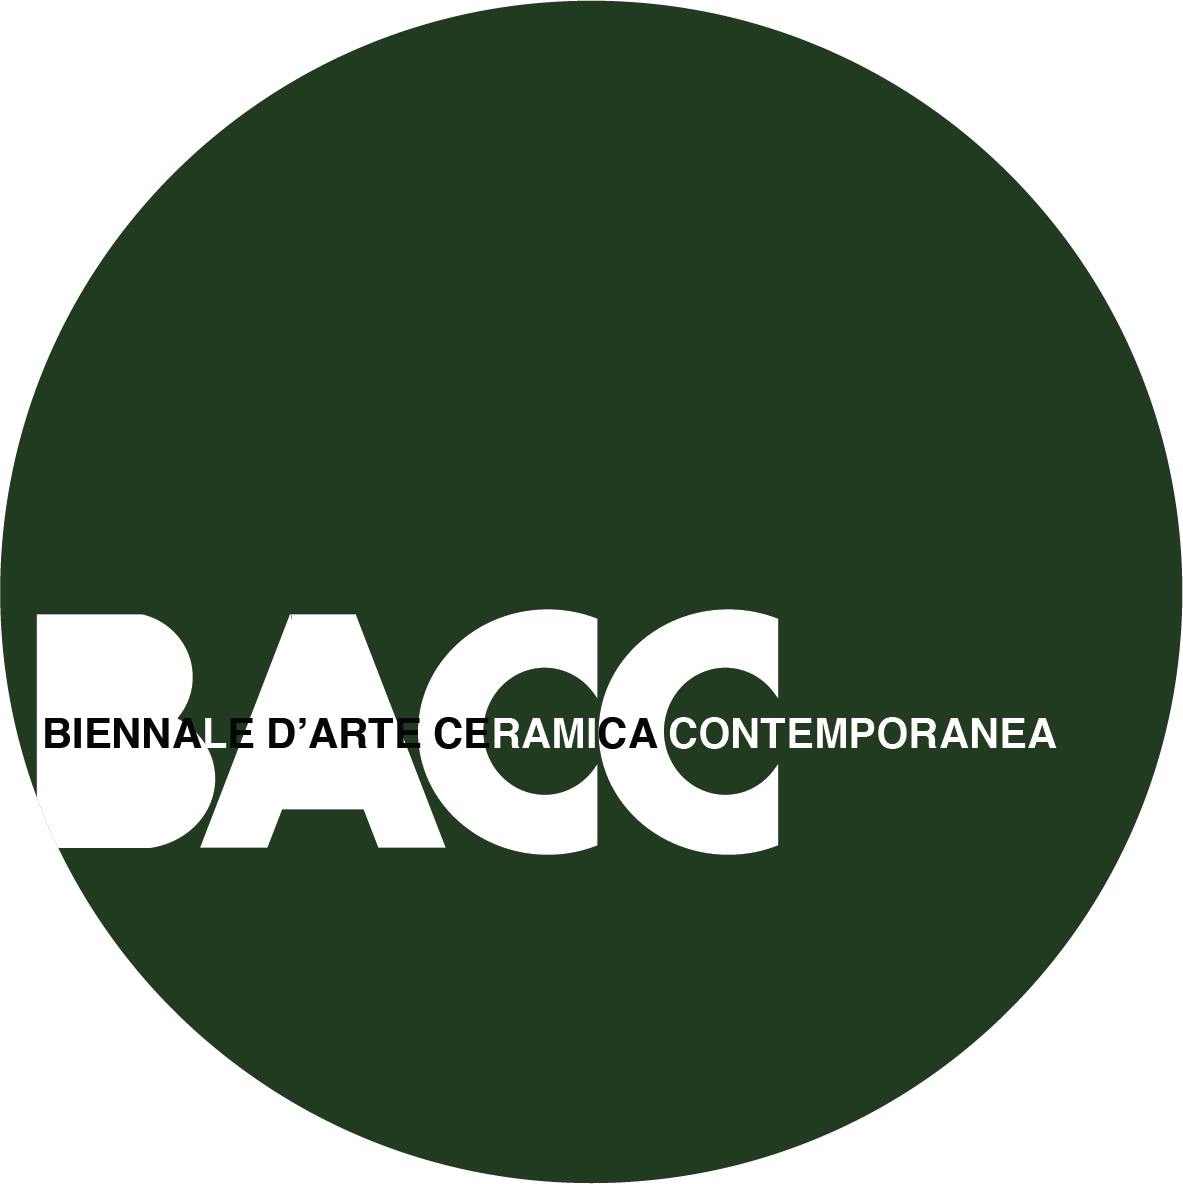 Biennale Arte Ceramica Contemporanea 2020